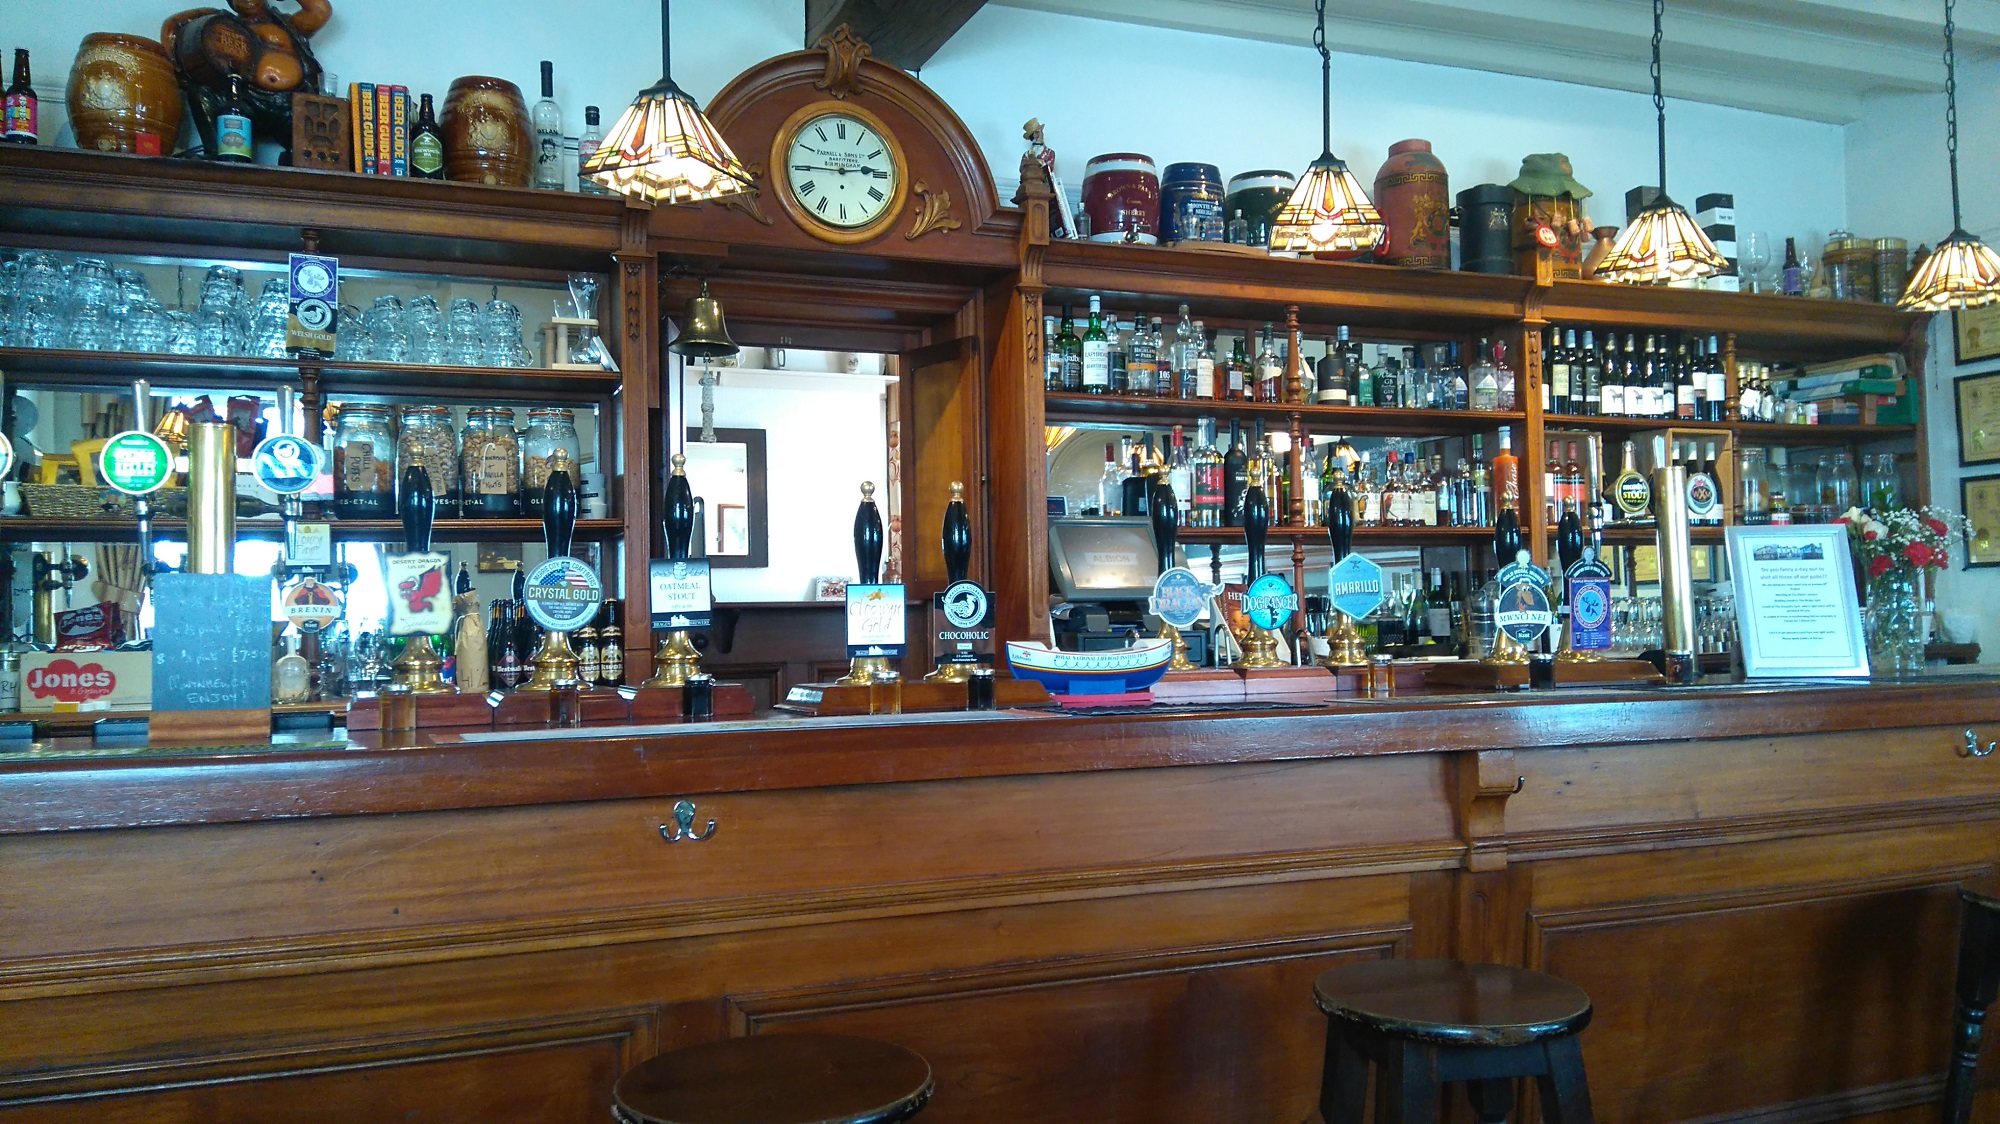 Pub bar ornate handpumps ales beers clock